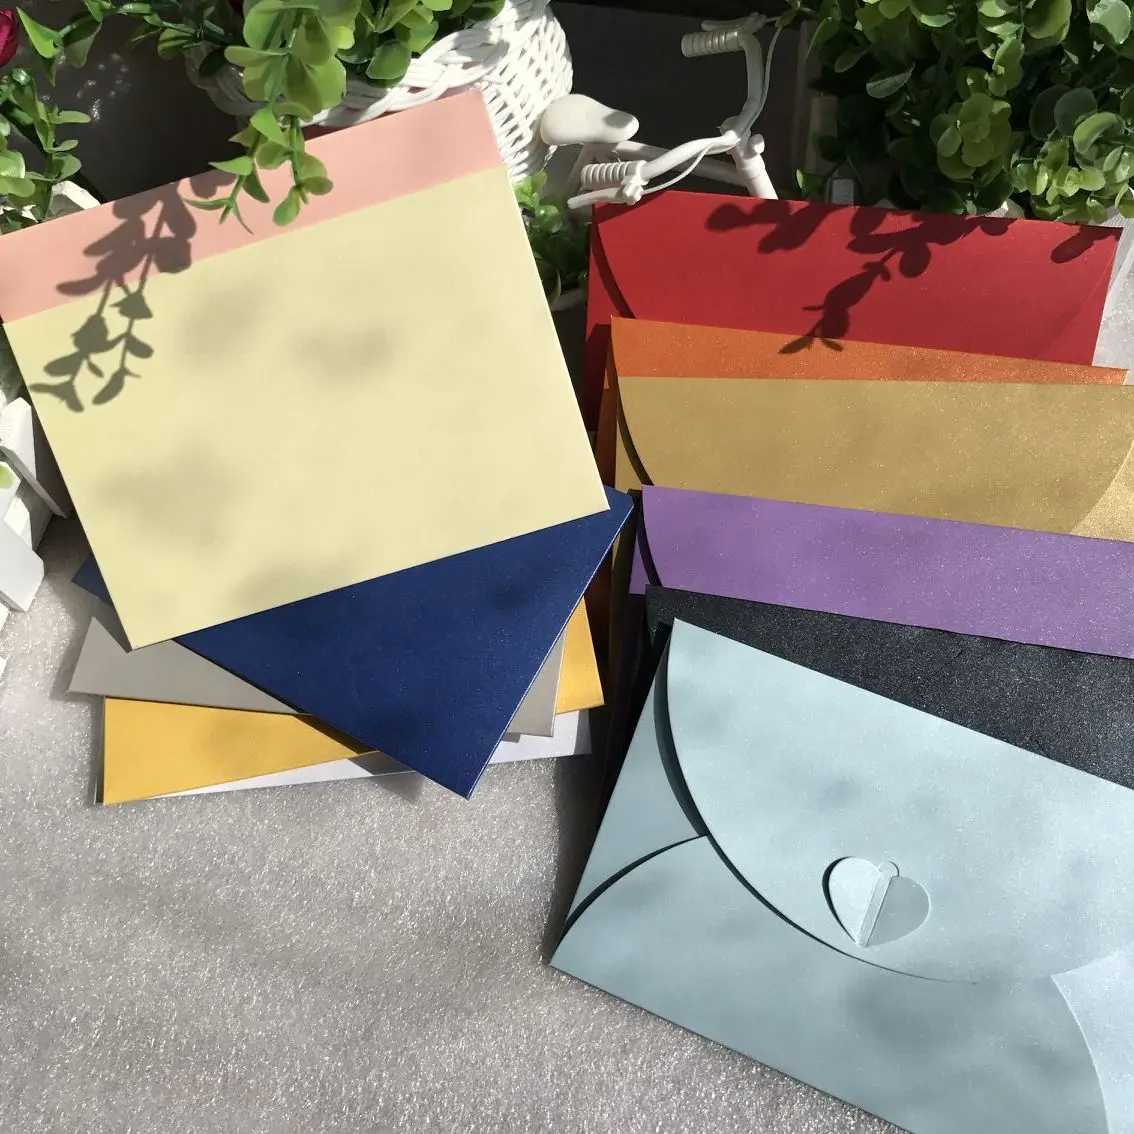 50 шт. 17,5*11 см винтажные маленькие цветные пустые бумажные конверты в стиле ретро, конверты для свадебных торжеств, приглашений, поздравитель... от AliExpress WW